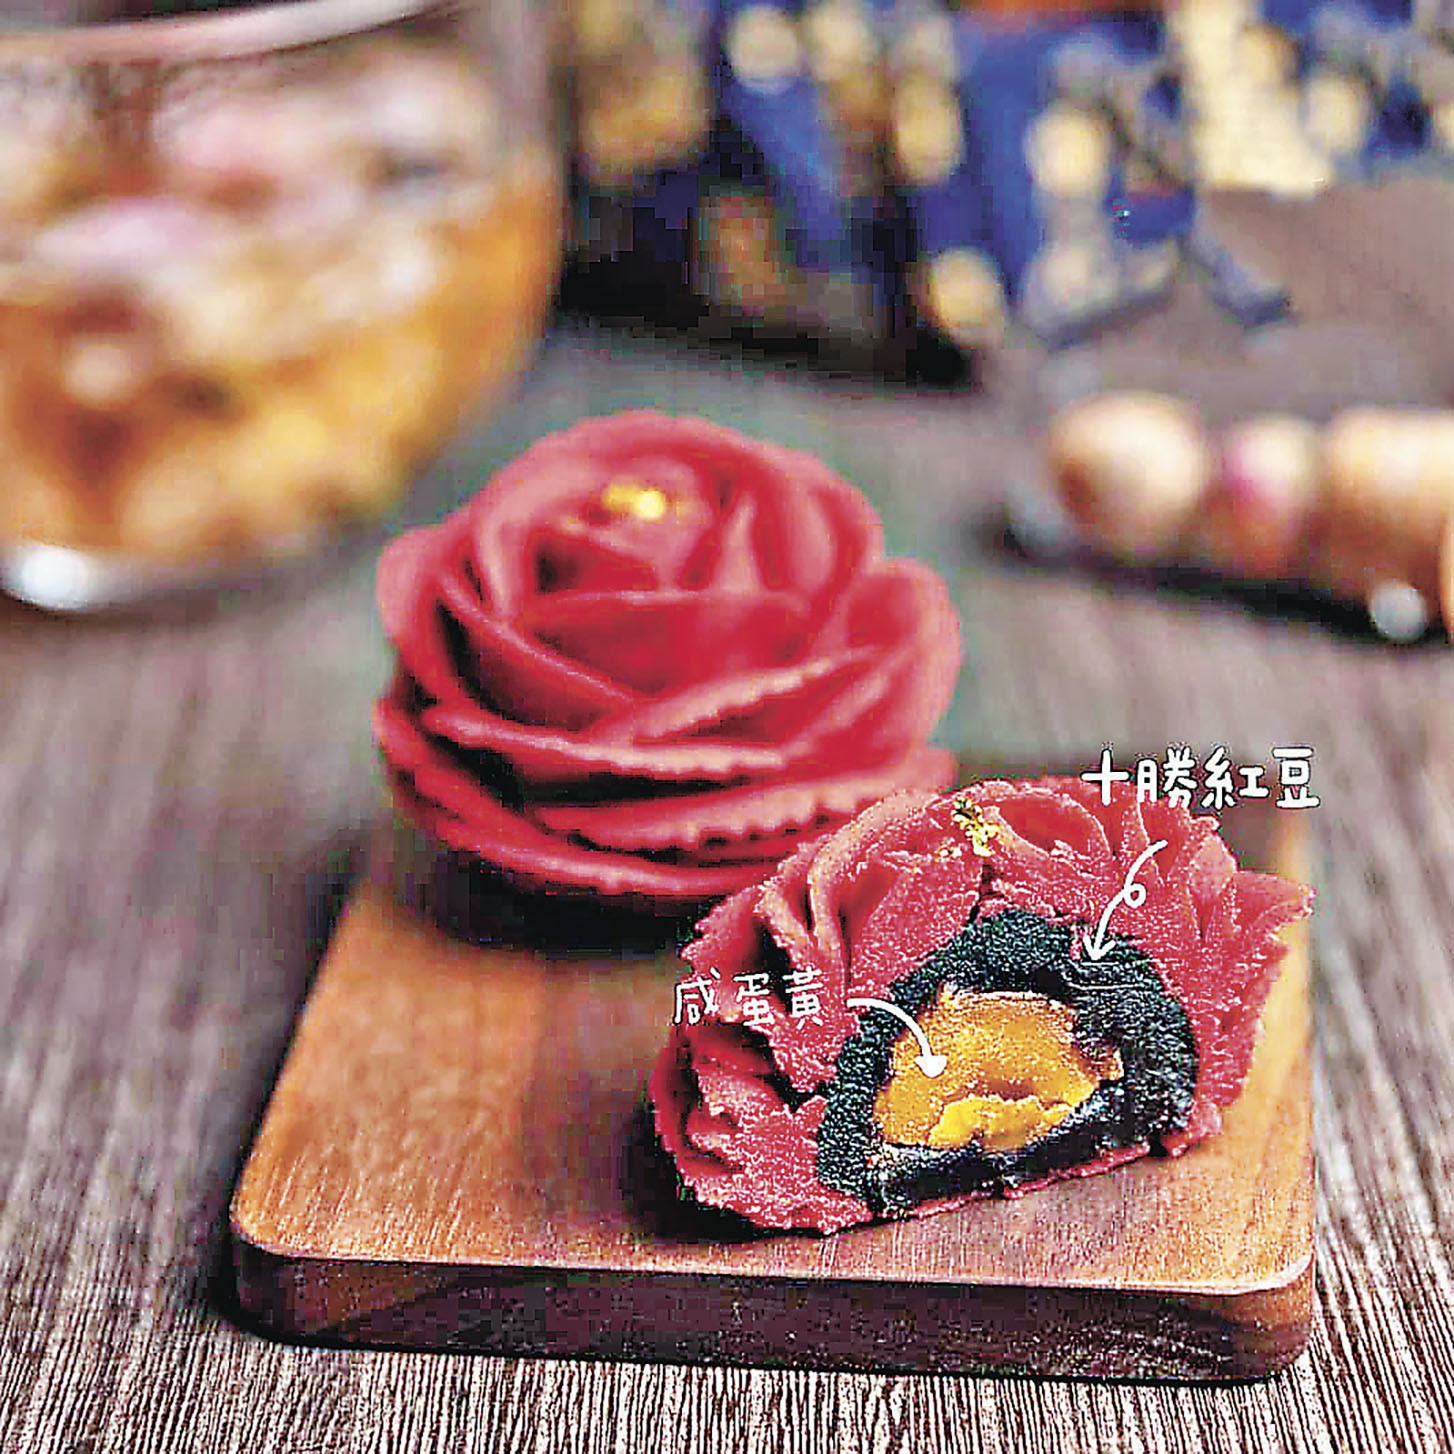 用日本十胜红豆作馅料的奶黄月饼,外形像朵玫瑰花,睇得又食得.